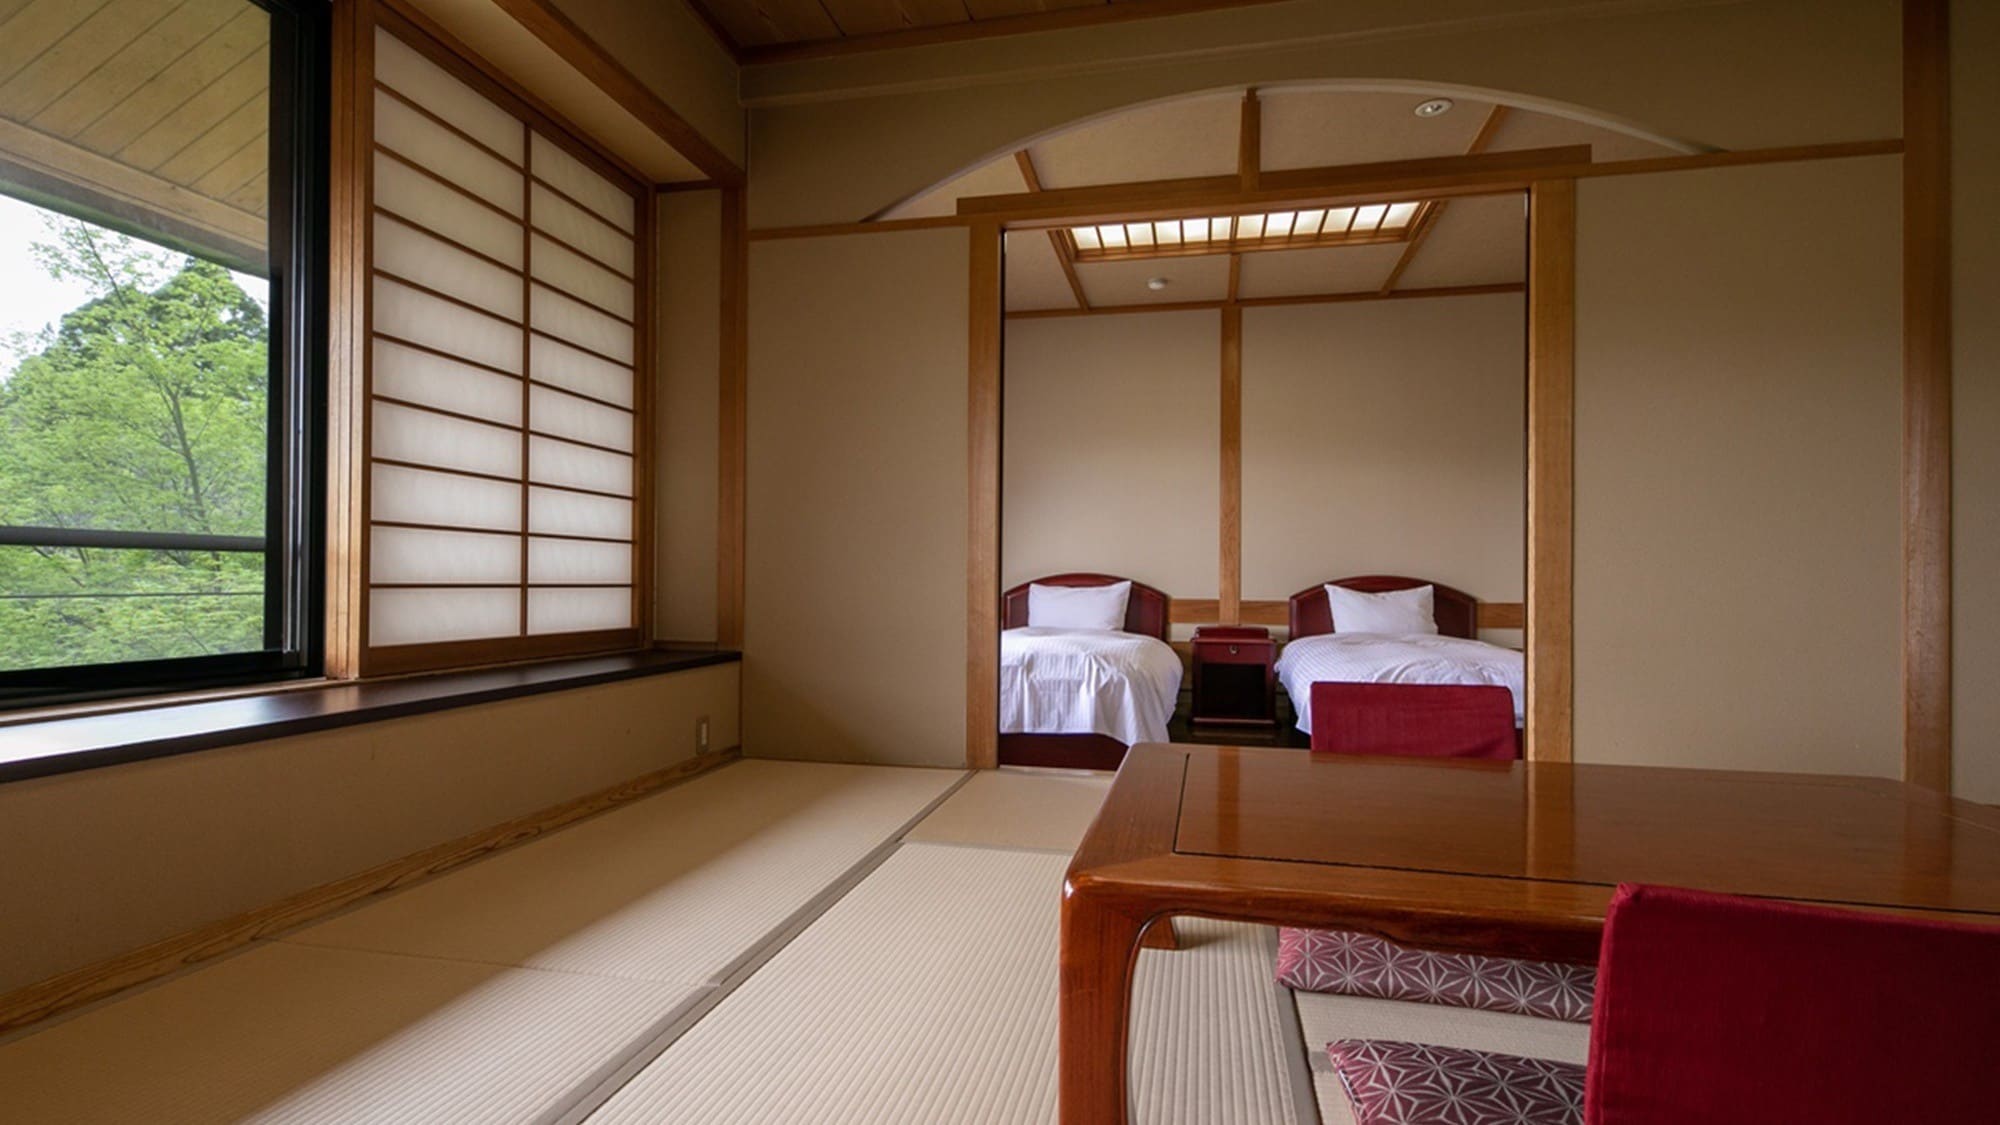 혼 저택 일본식 방 · 일본식 서양실